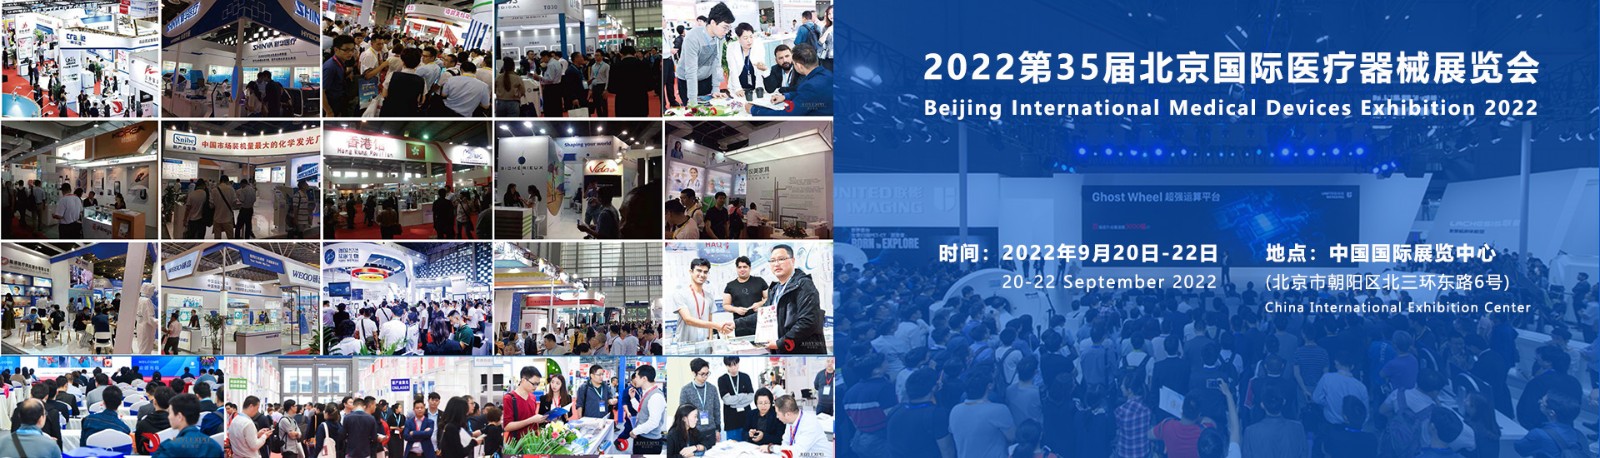 2022北京国际医疗器械展览会-智能监护医疗展区